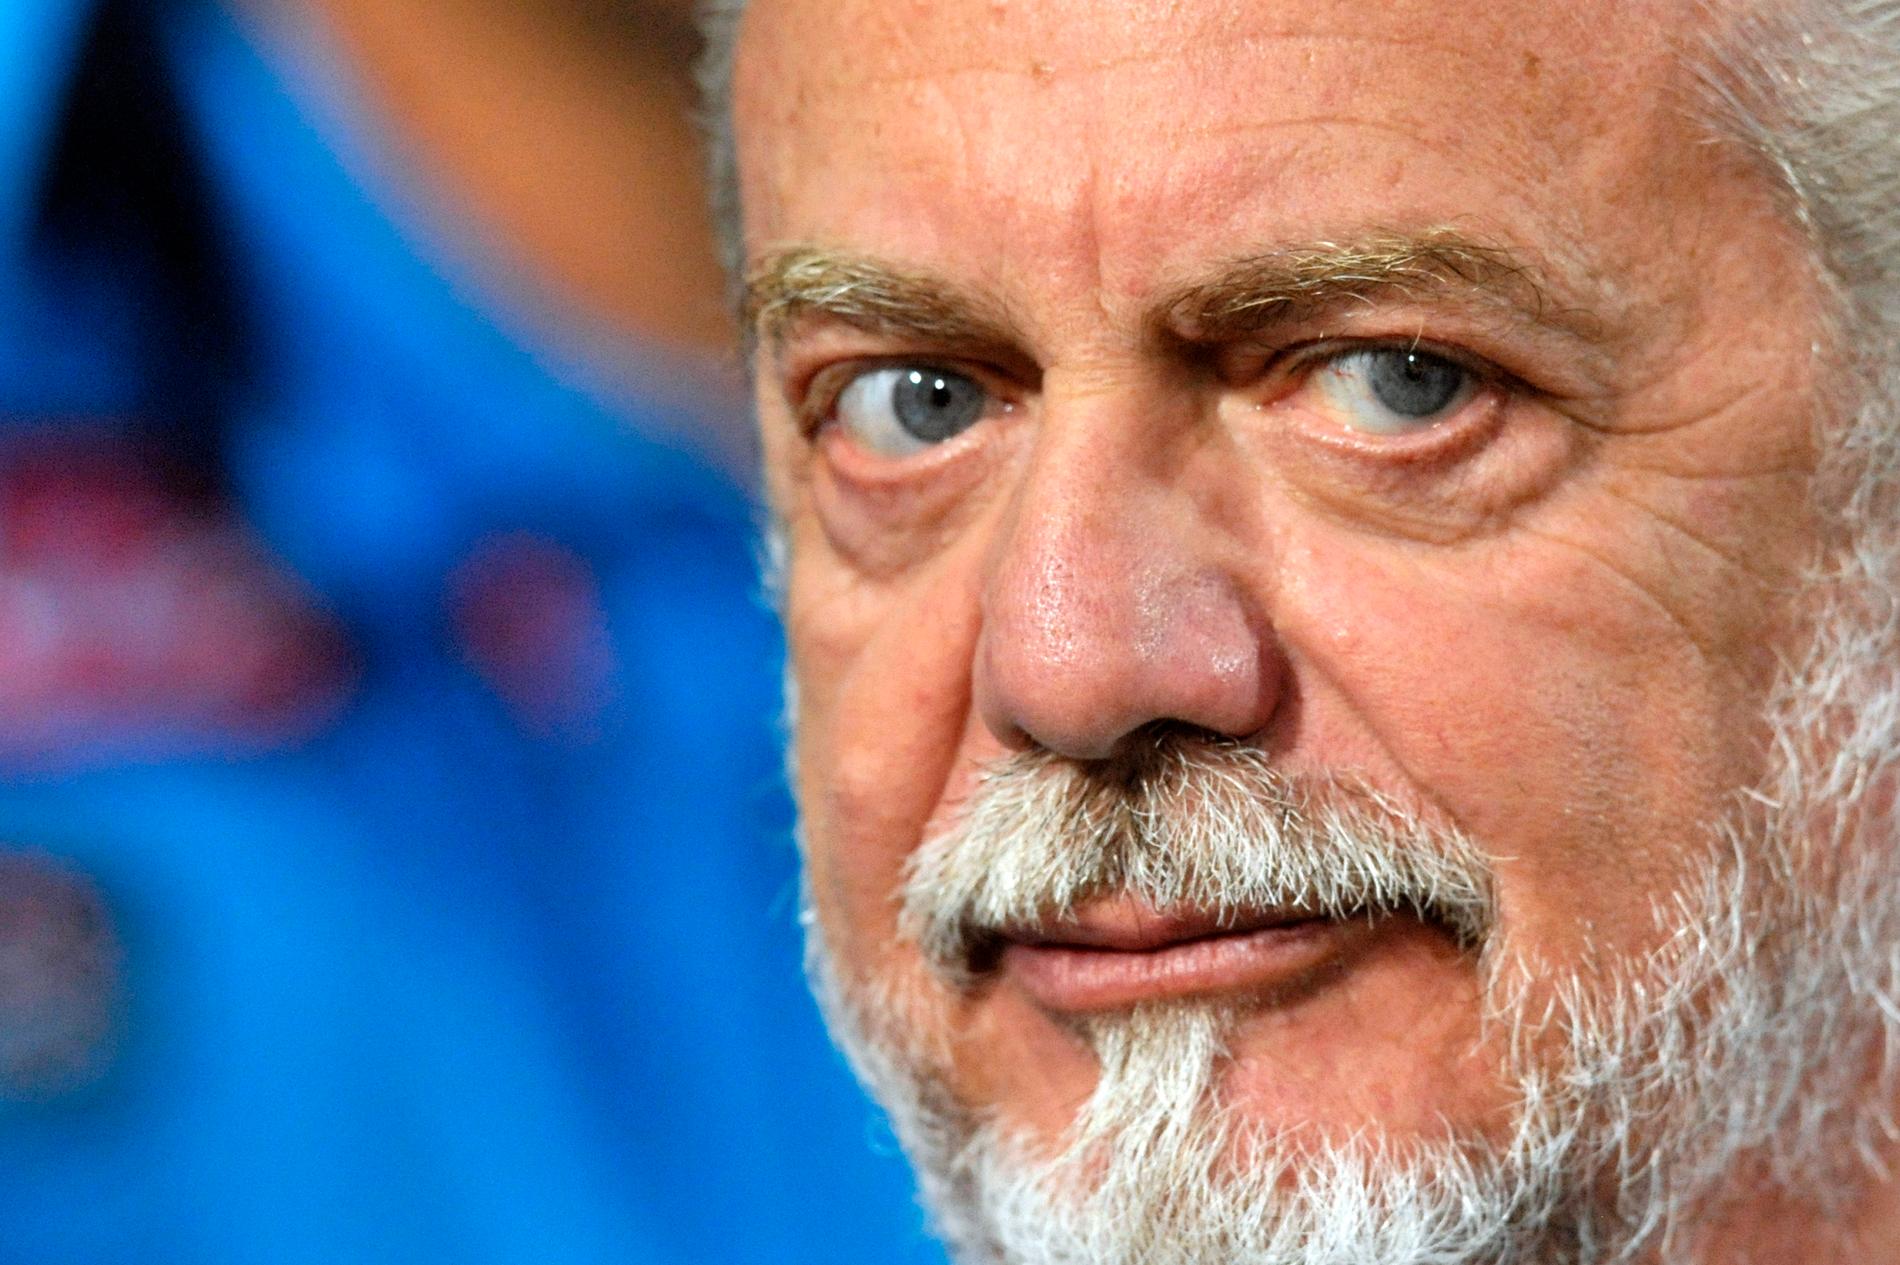 Il presidente del calcio italiano ha partecipato alla riunione: è stato infettato dal virus Corona